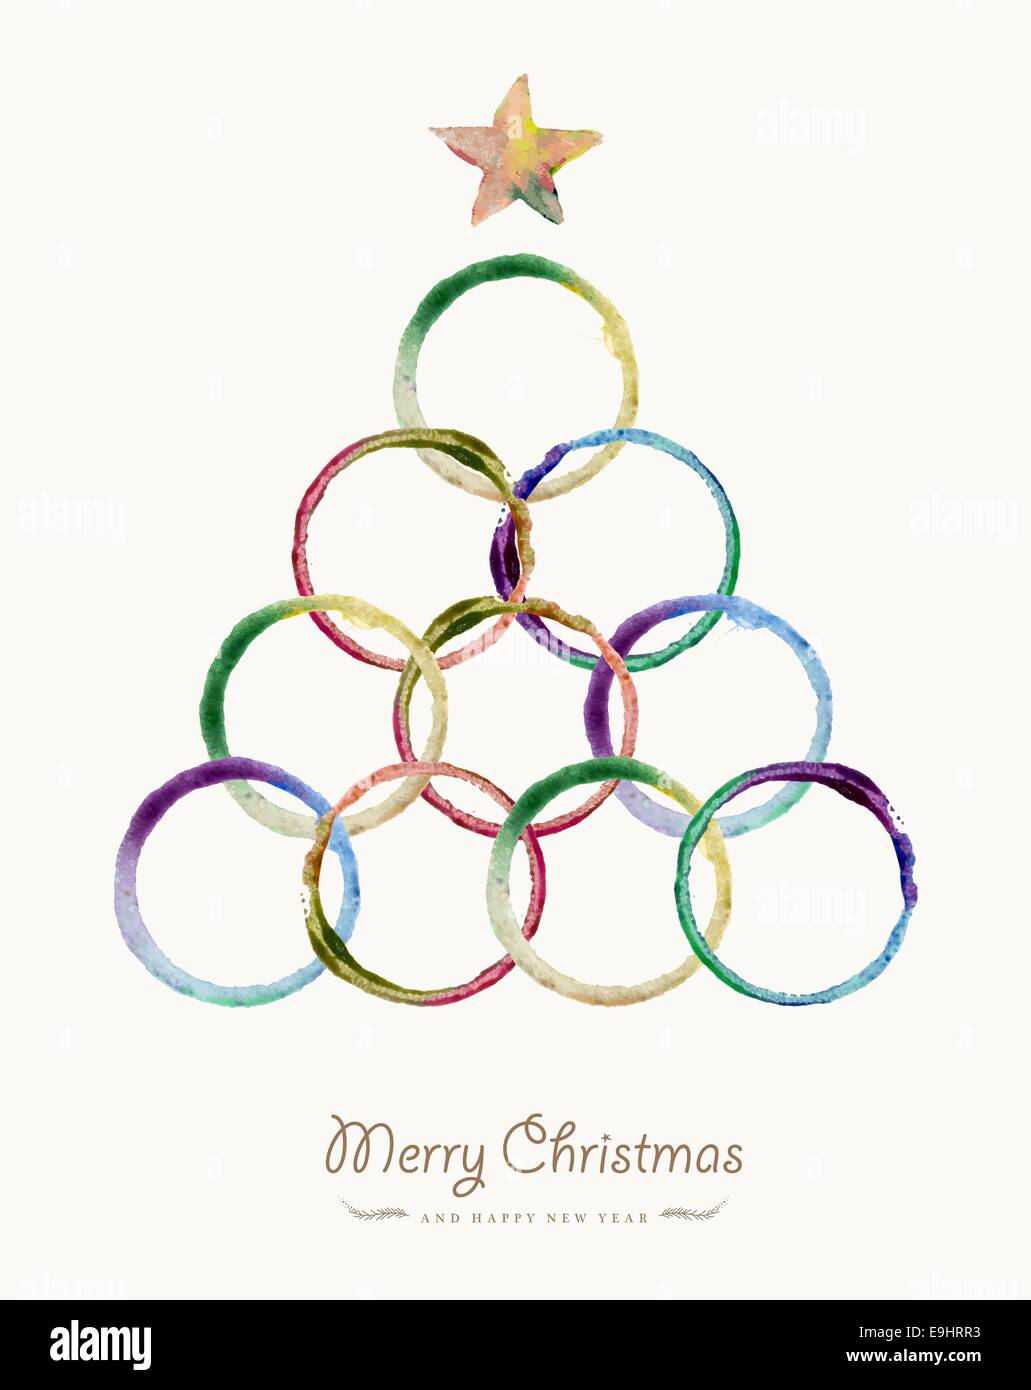 Joyeux Noël carte de souhaits avec cercle coloré aquarelle dessinés à la main, forme d'arbre. Fichier vectoriel EPS10 organisé en couches pour l'e Banque D'Images